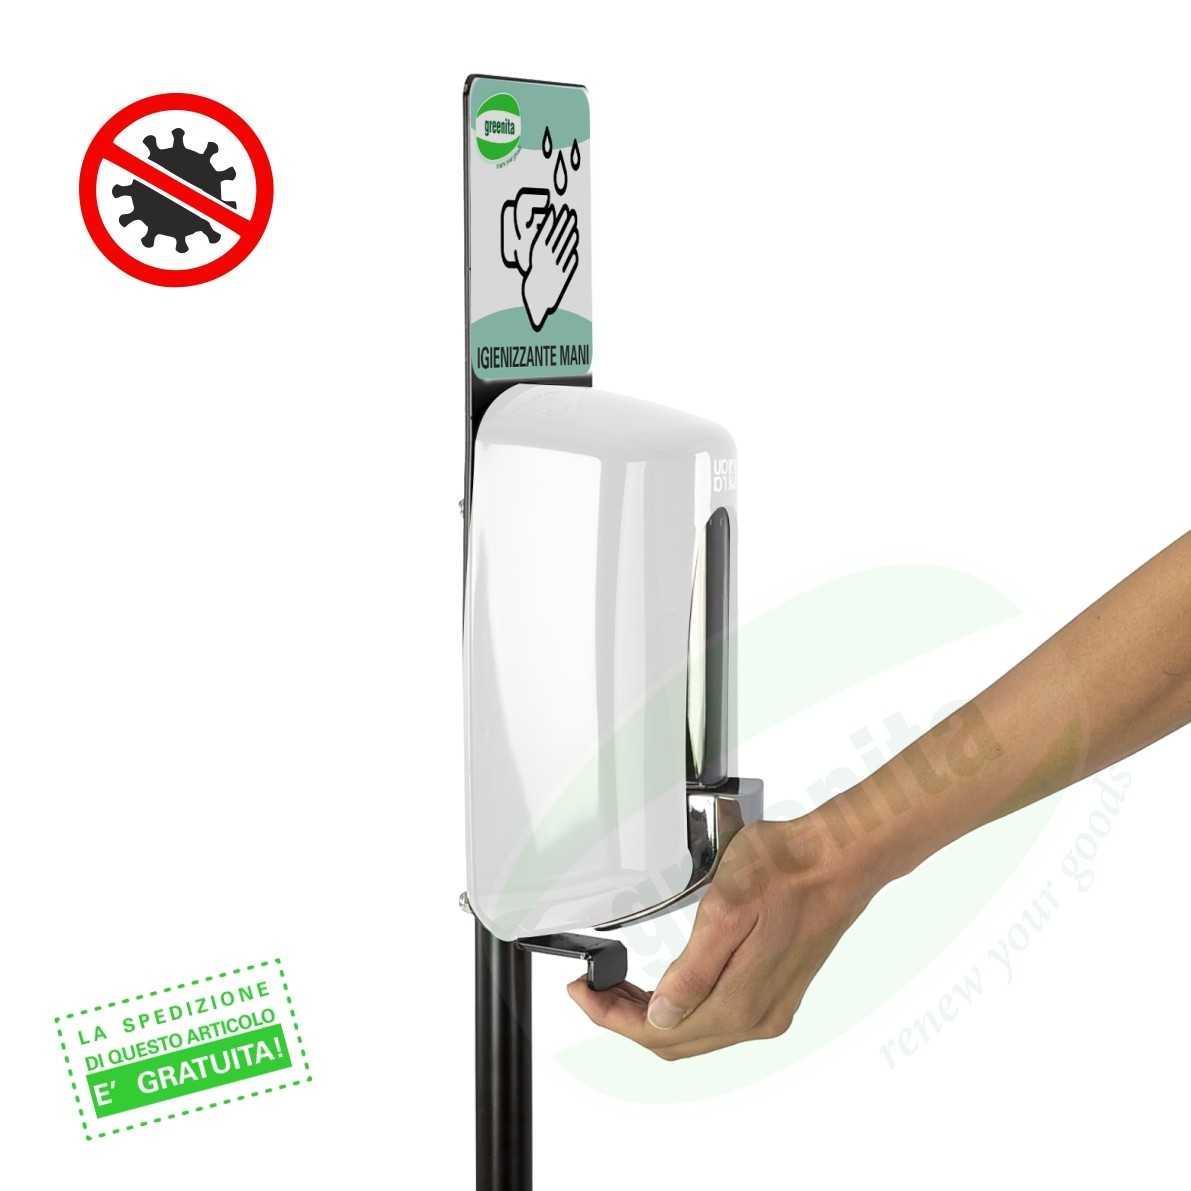 Colonnina Igienizzante con Dispenser per Gel Igienizzante/Disinfettante Mani - FINITURA METALLO VERNICIATO BIANCO - 2